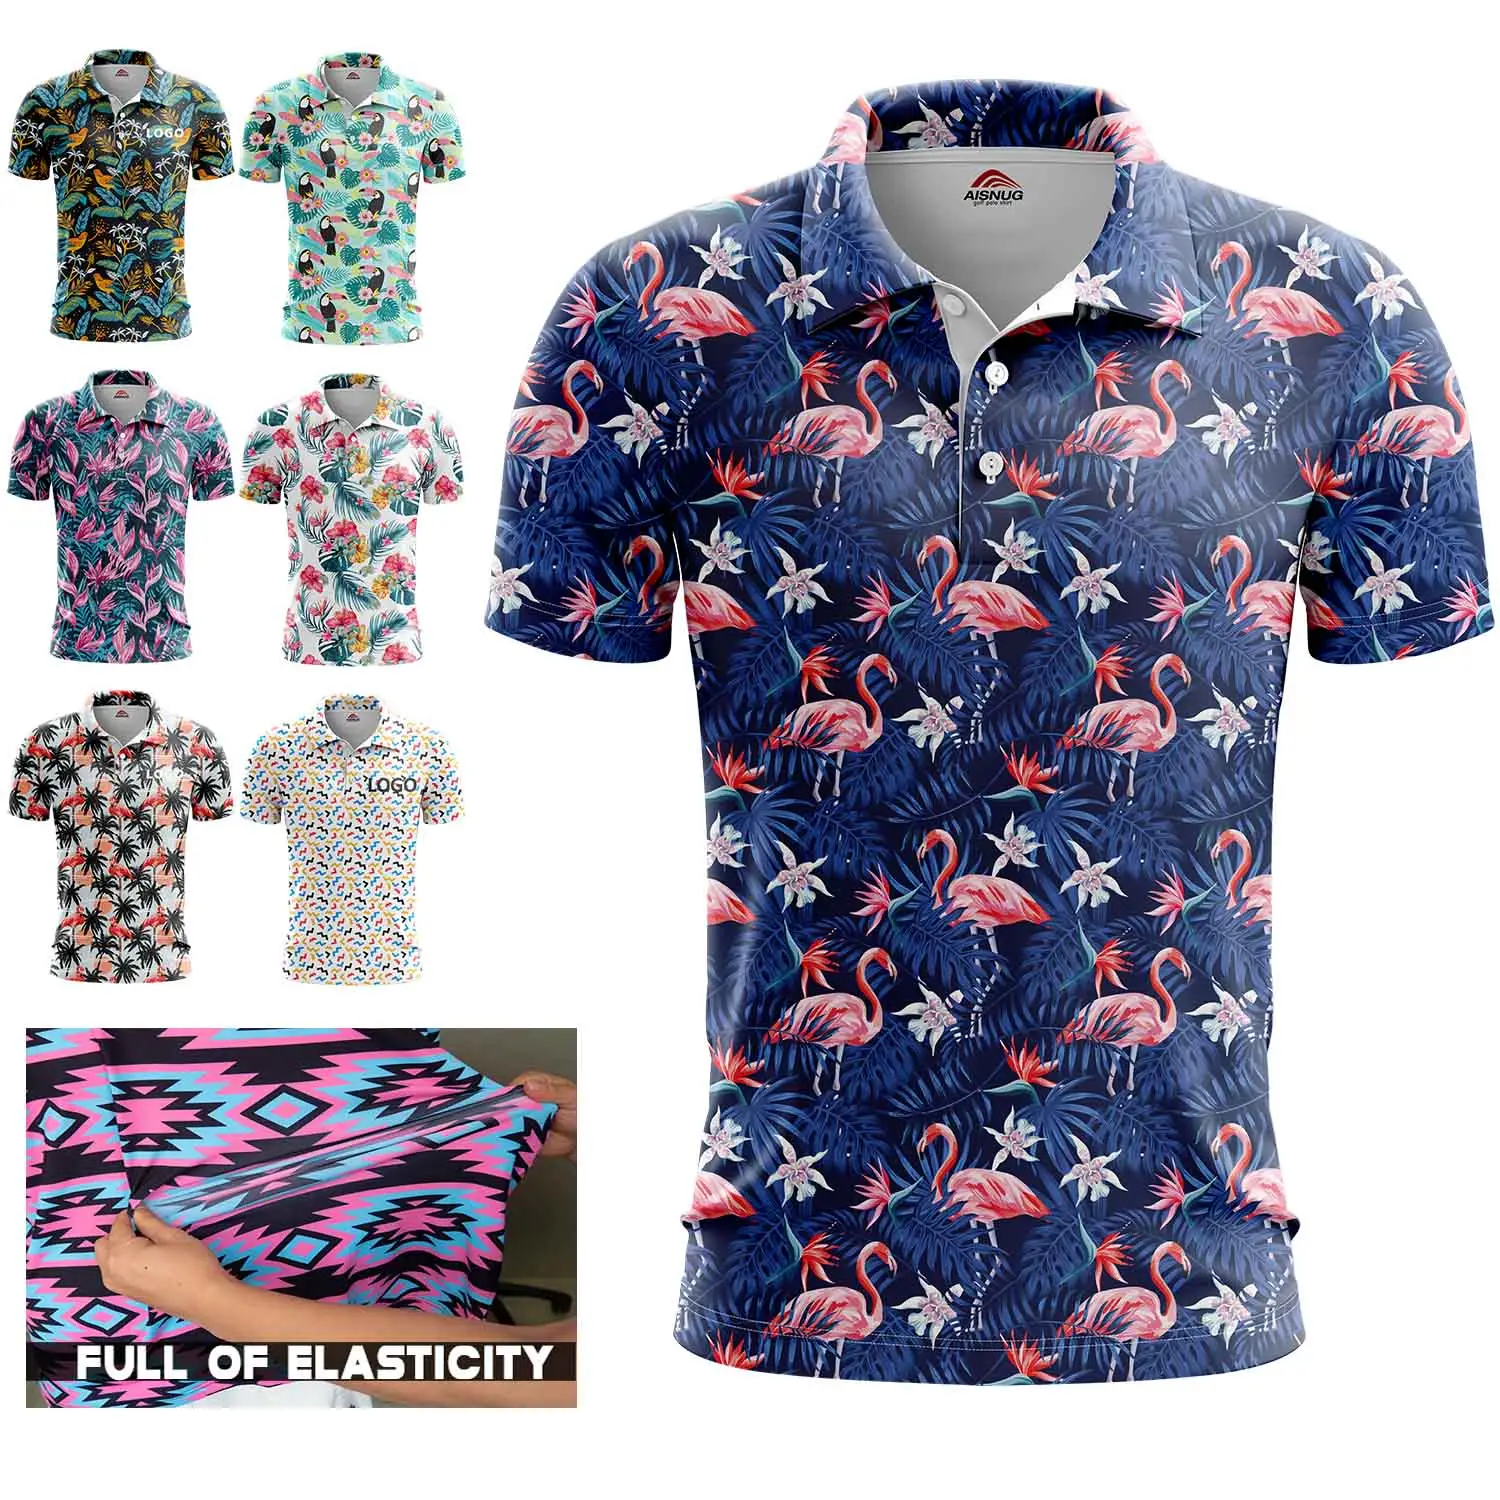 OEM logo personalizzato stampato sublimata golf polo t shirt personalizzata camicia di polo per gli uomini